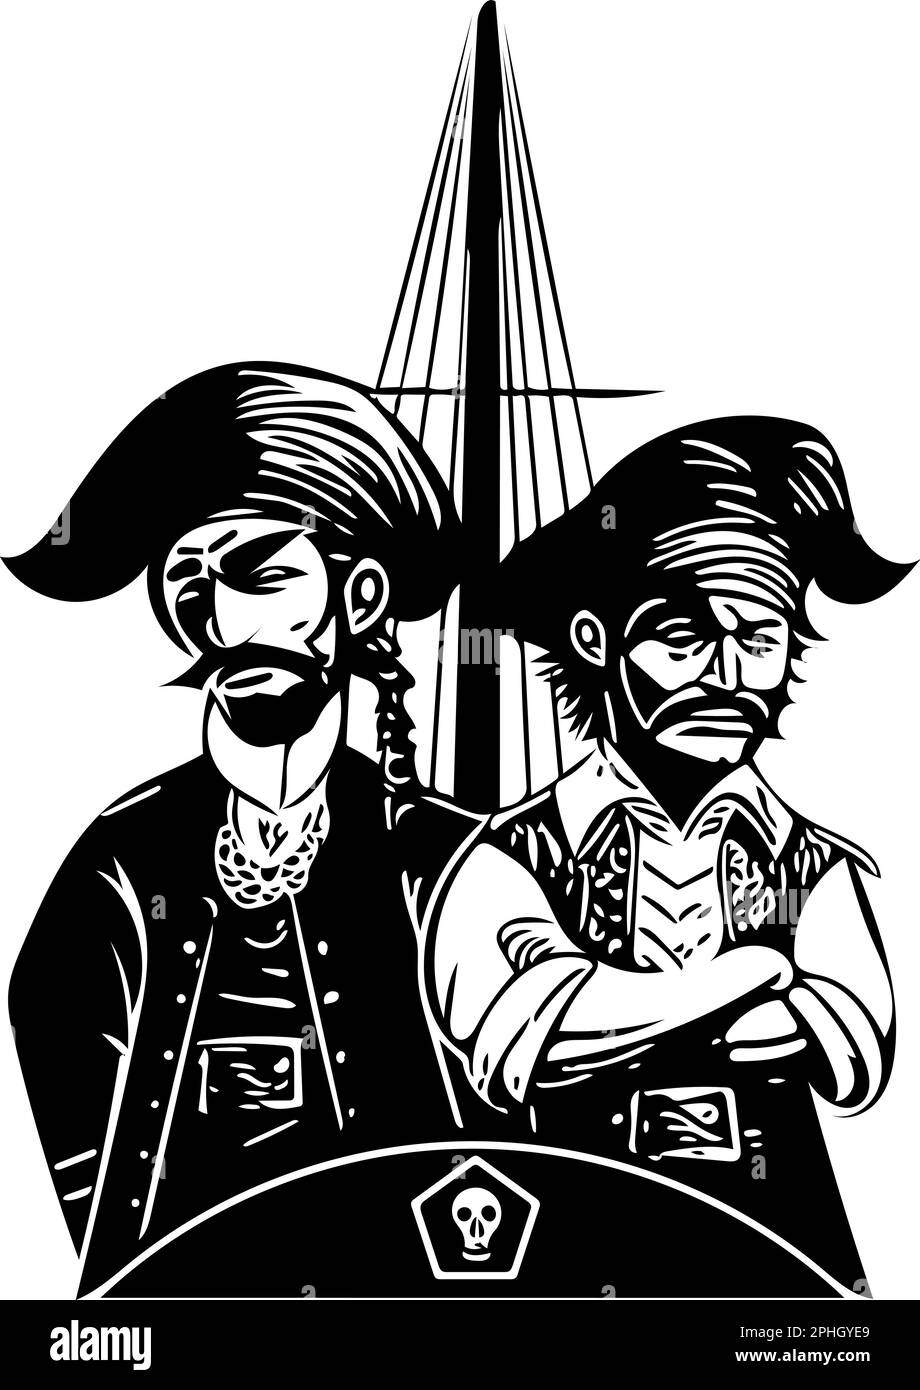 Zwei Piraten auf ihrem Piratenschiff als Vektor. Gliederung als Vorlage oder Symbol. Stock Vektor